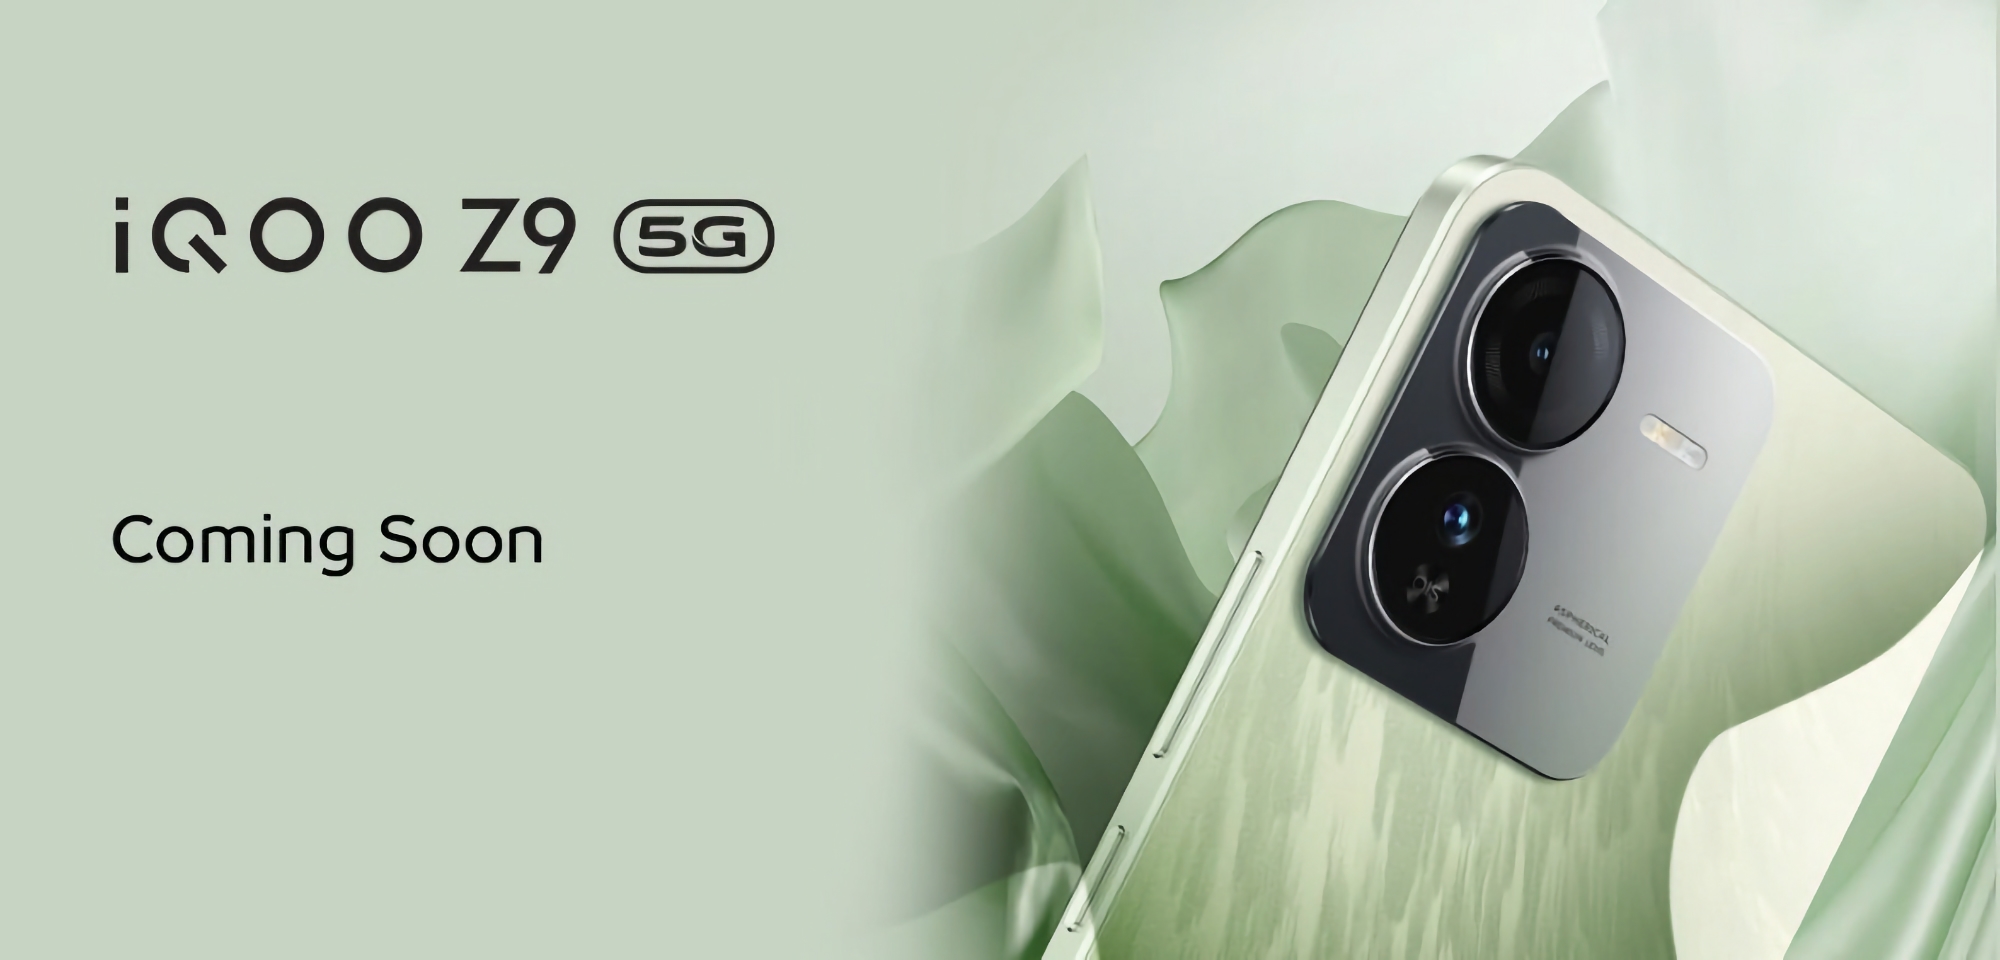 MediaTek Dimensity 7200-chip och Sony IMX882-kamera: vivo har börjat teasa för iQOO Z9 5G-smarttelefonen